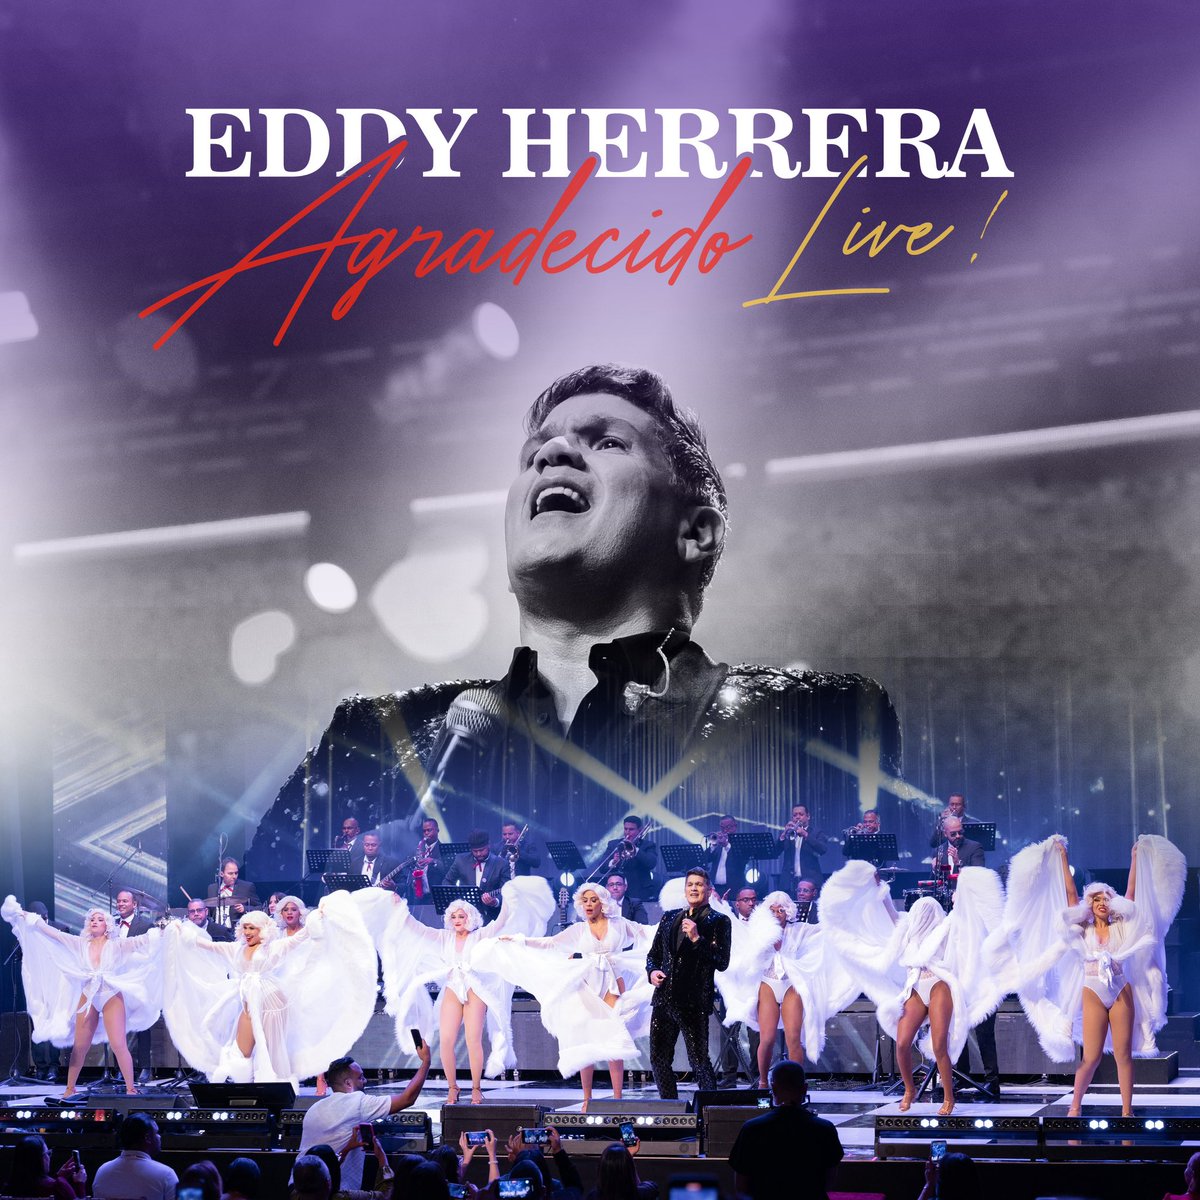 🎶💿Lista de canciones #AgradecidoLive 24 de mayo estará disponible en todas las plataformas digitales. 🎸🎶 #EddyHerrera #Merengue